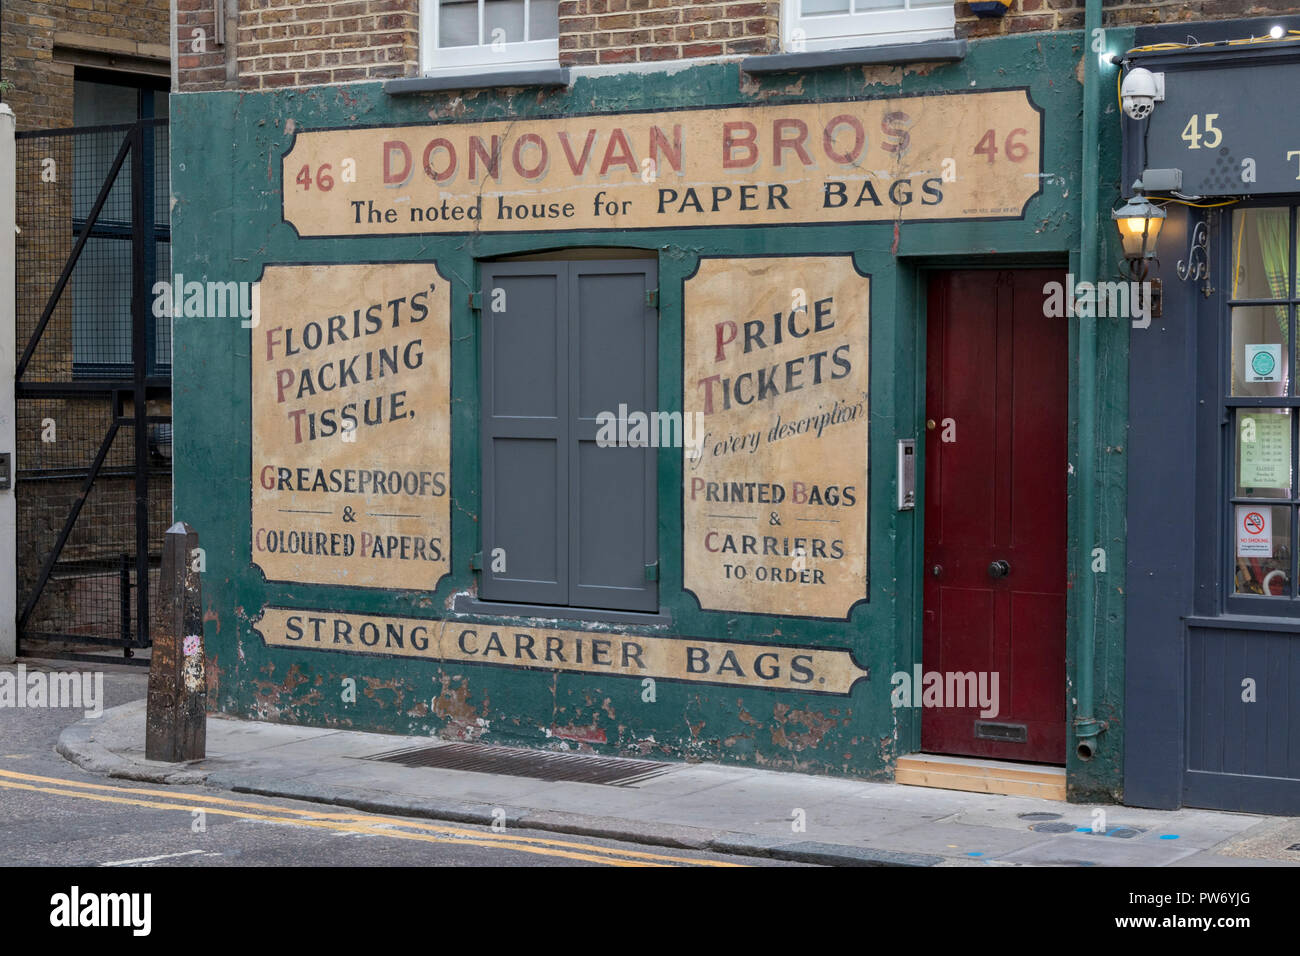 Donovan Bros avec un sac en papier boutique, Crispin Street dans le Vieux Marché de Spitalfields à Londres, Angleterre, RU Banque D'Images